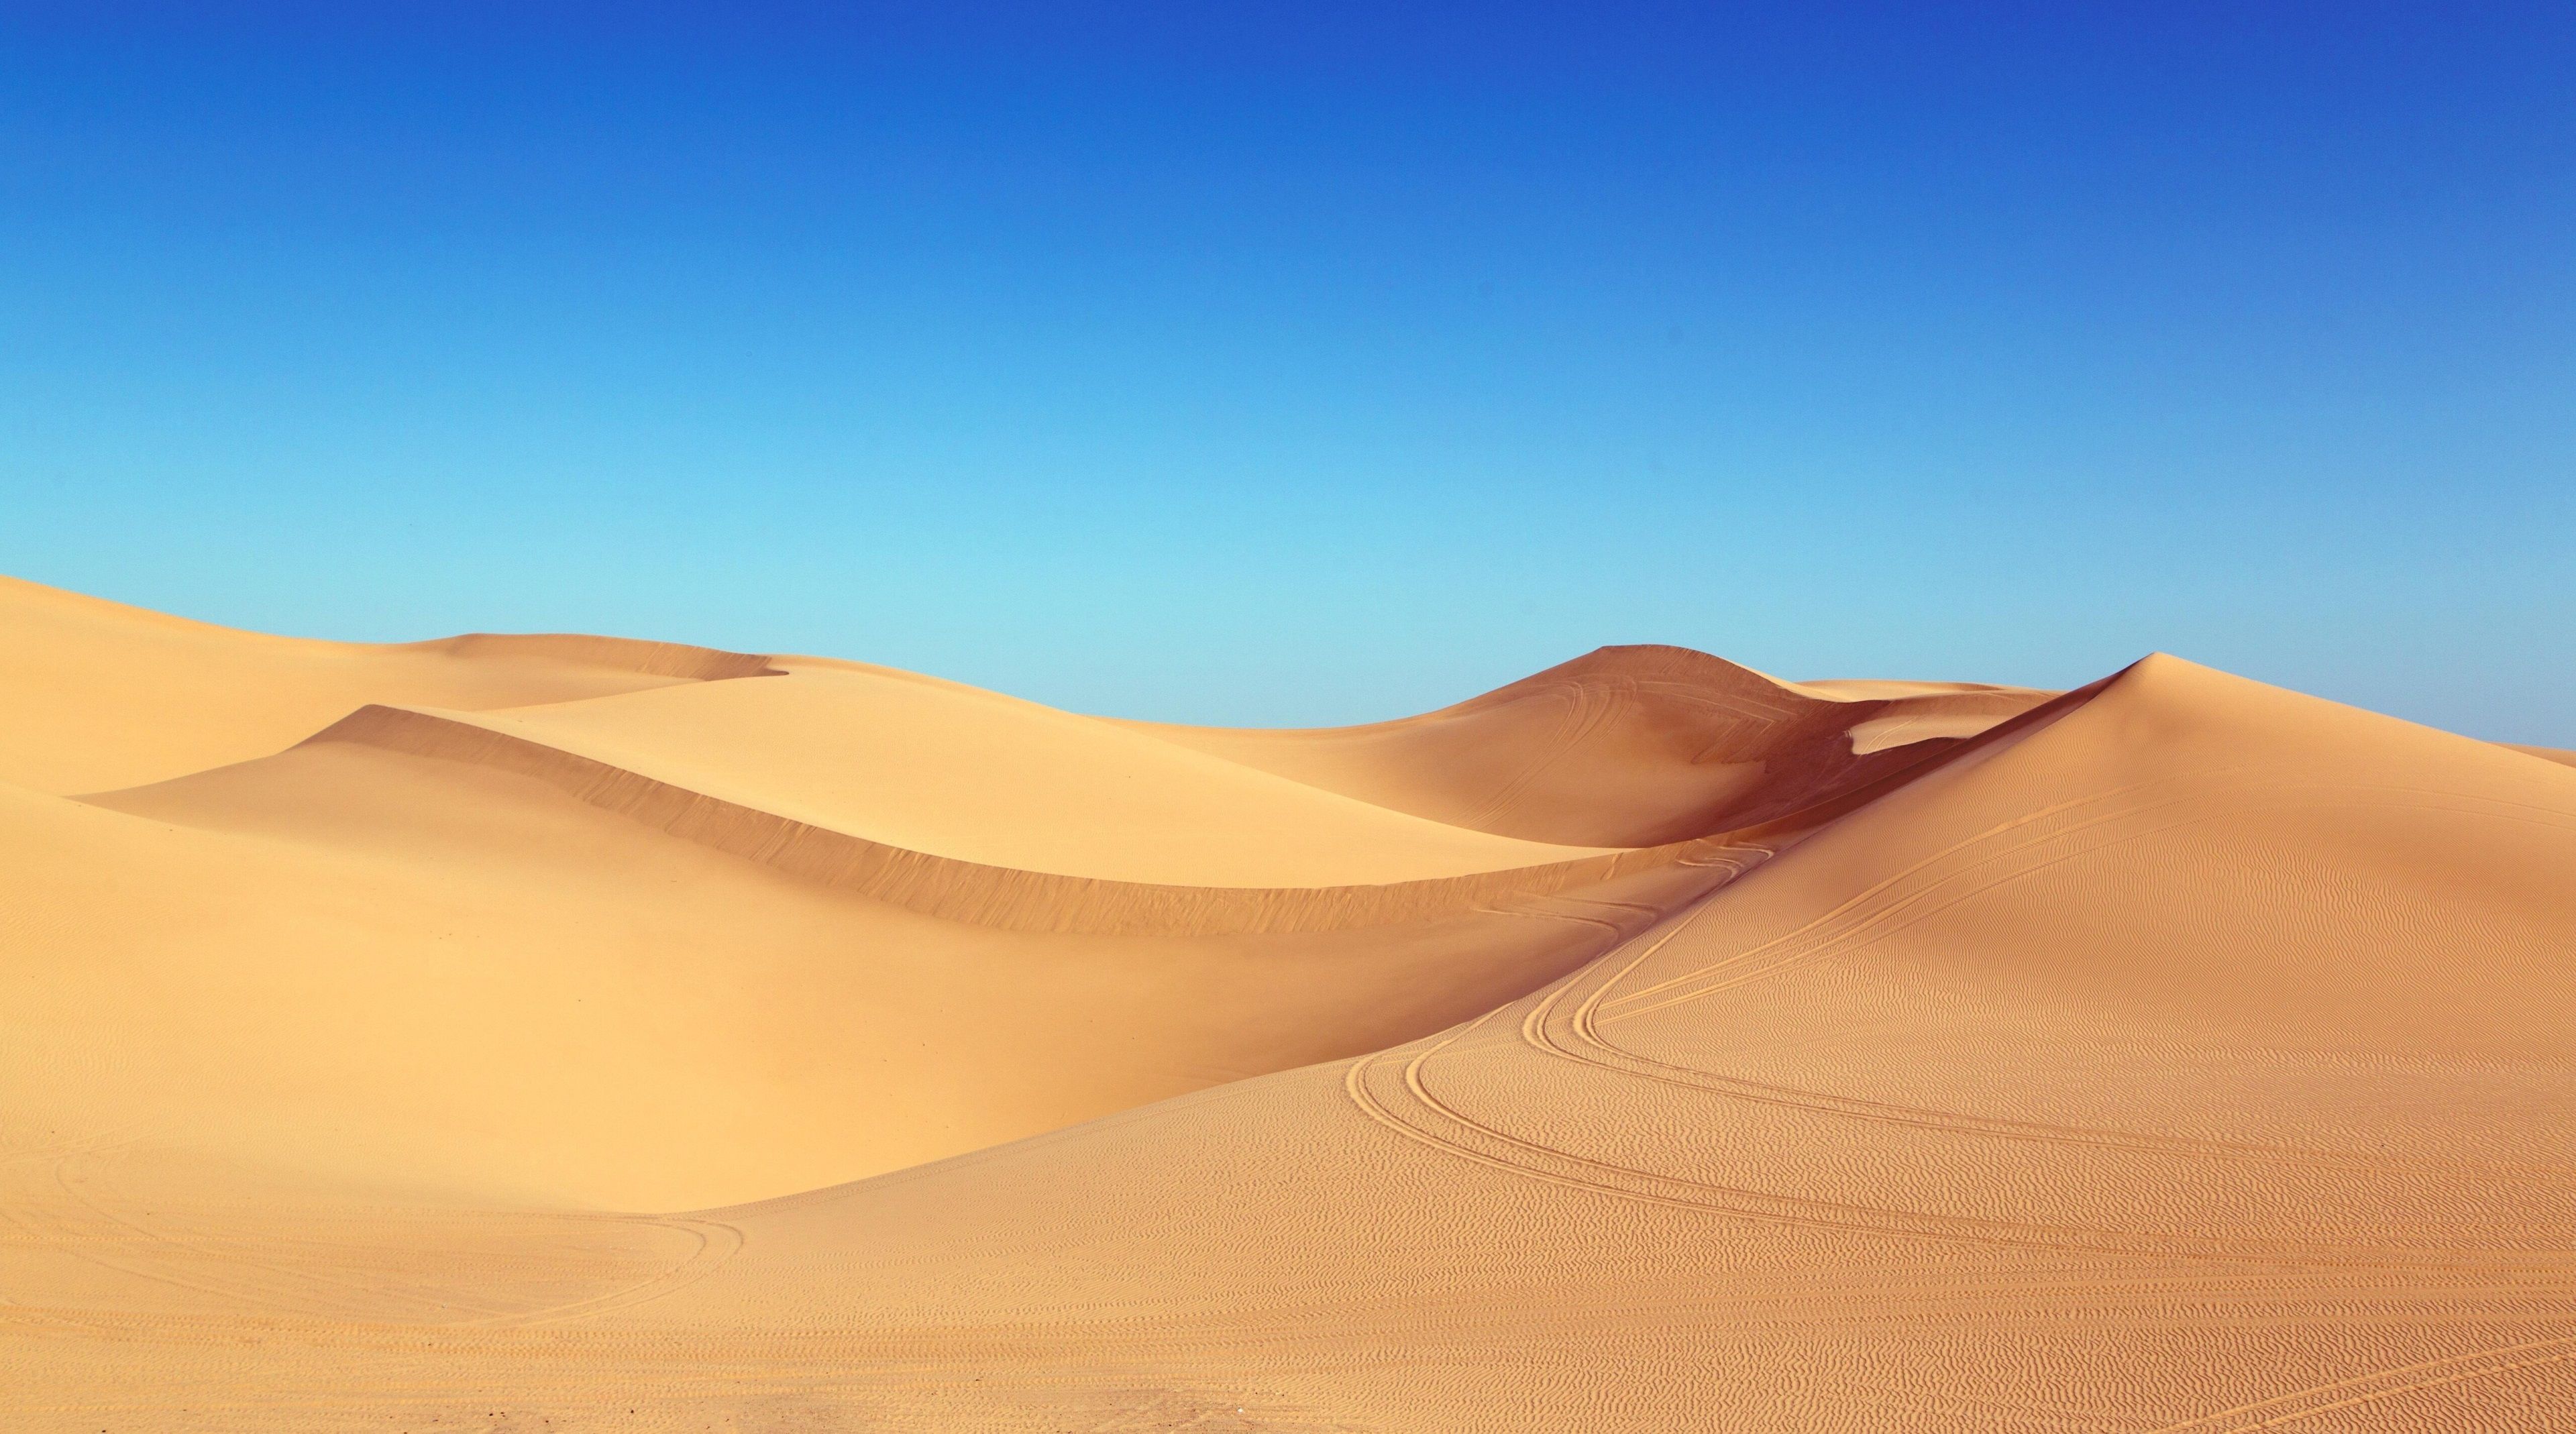 desert 4k download wallpaper for pc. Dune, Sand dunes, Desert ecosystem